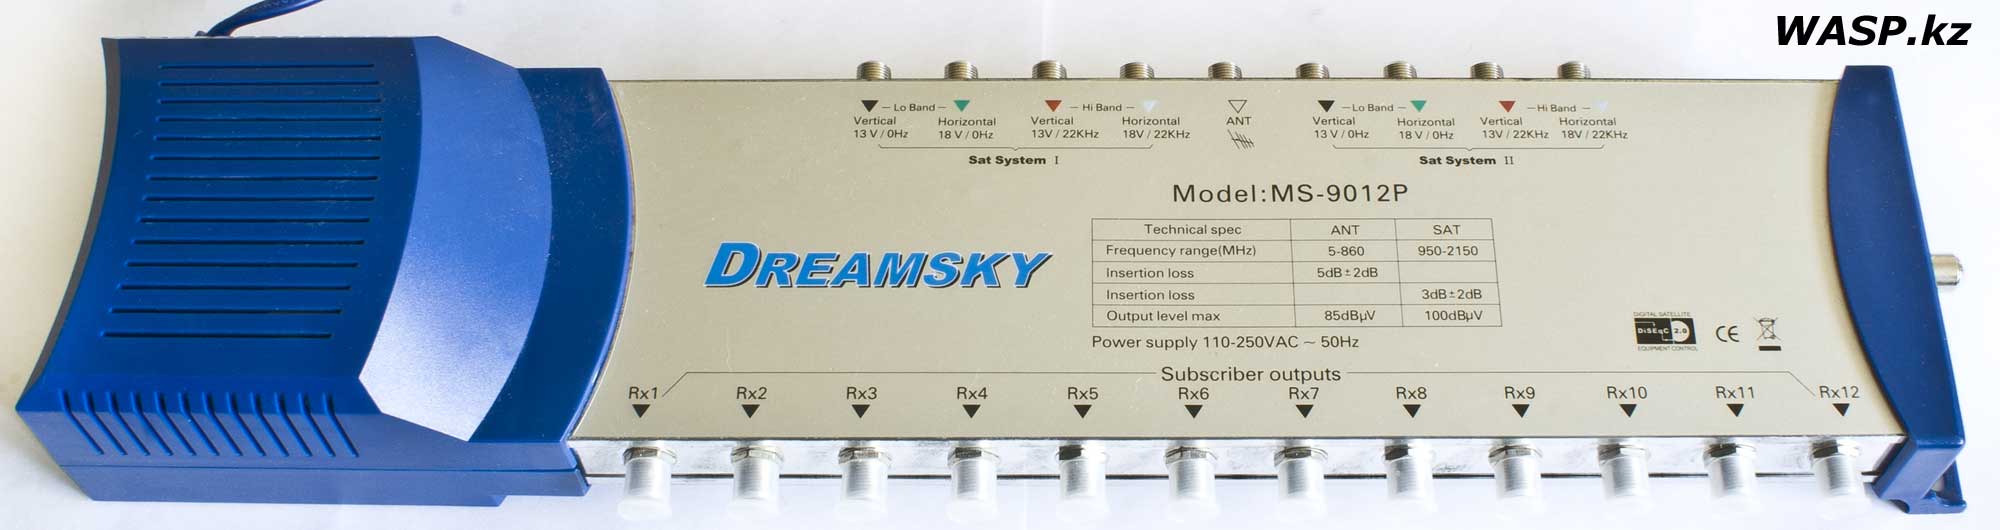 Dreamsky MS-9012P активный мультисвитч полный обзор